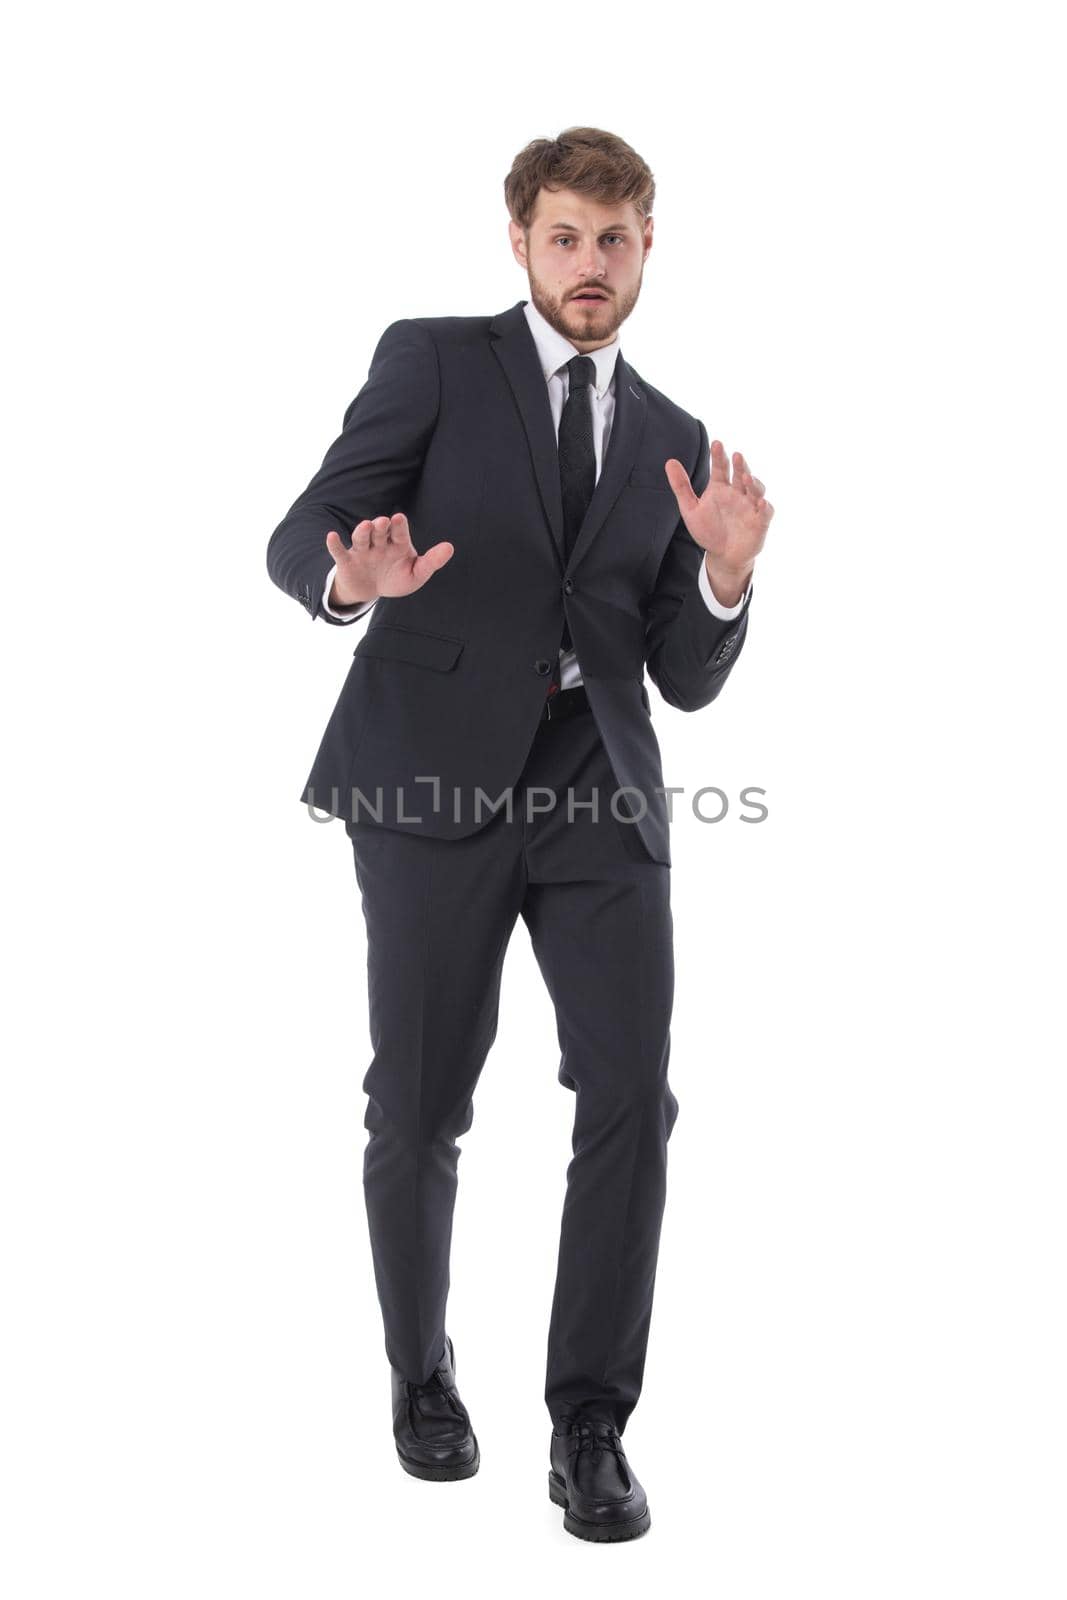 Business man stop gesture by ALotOfPeople